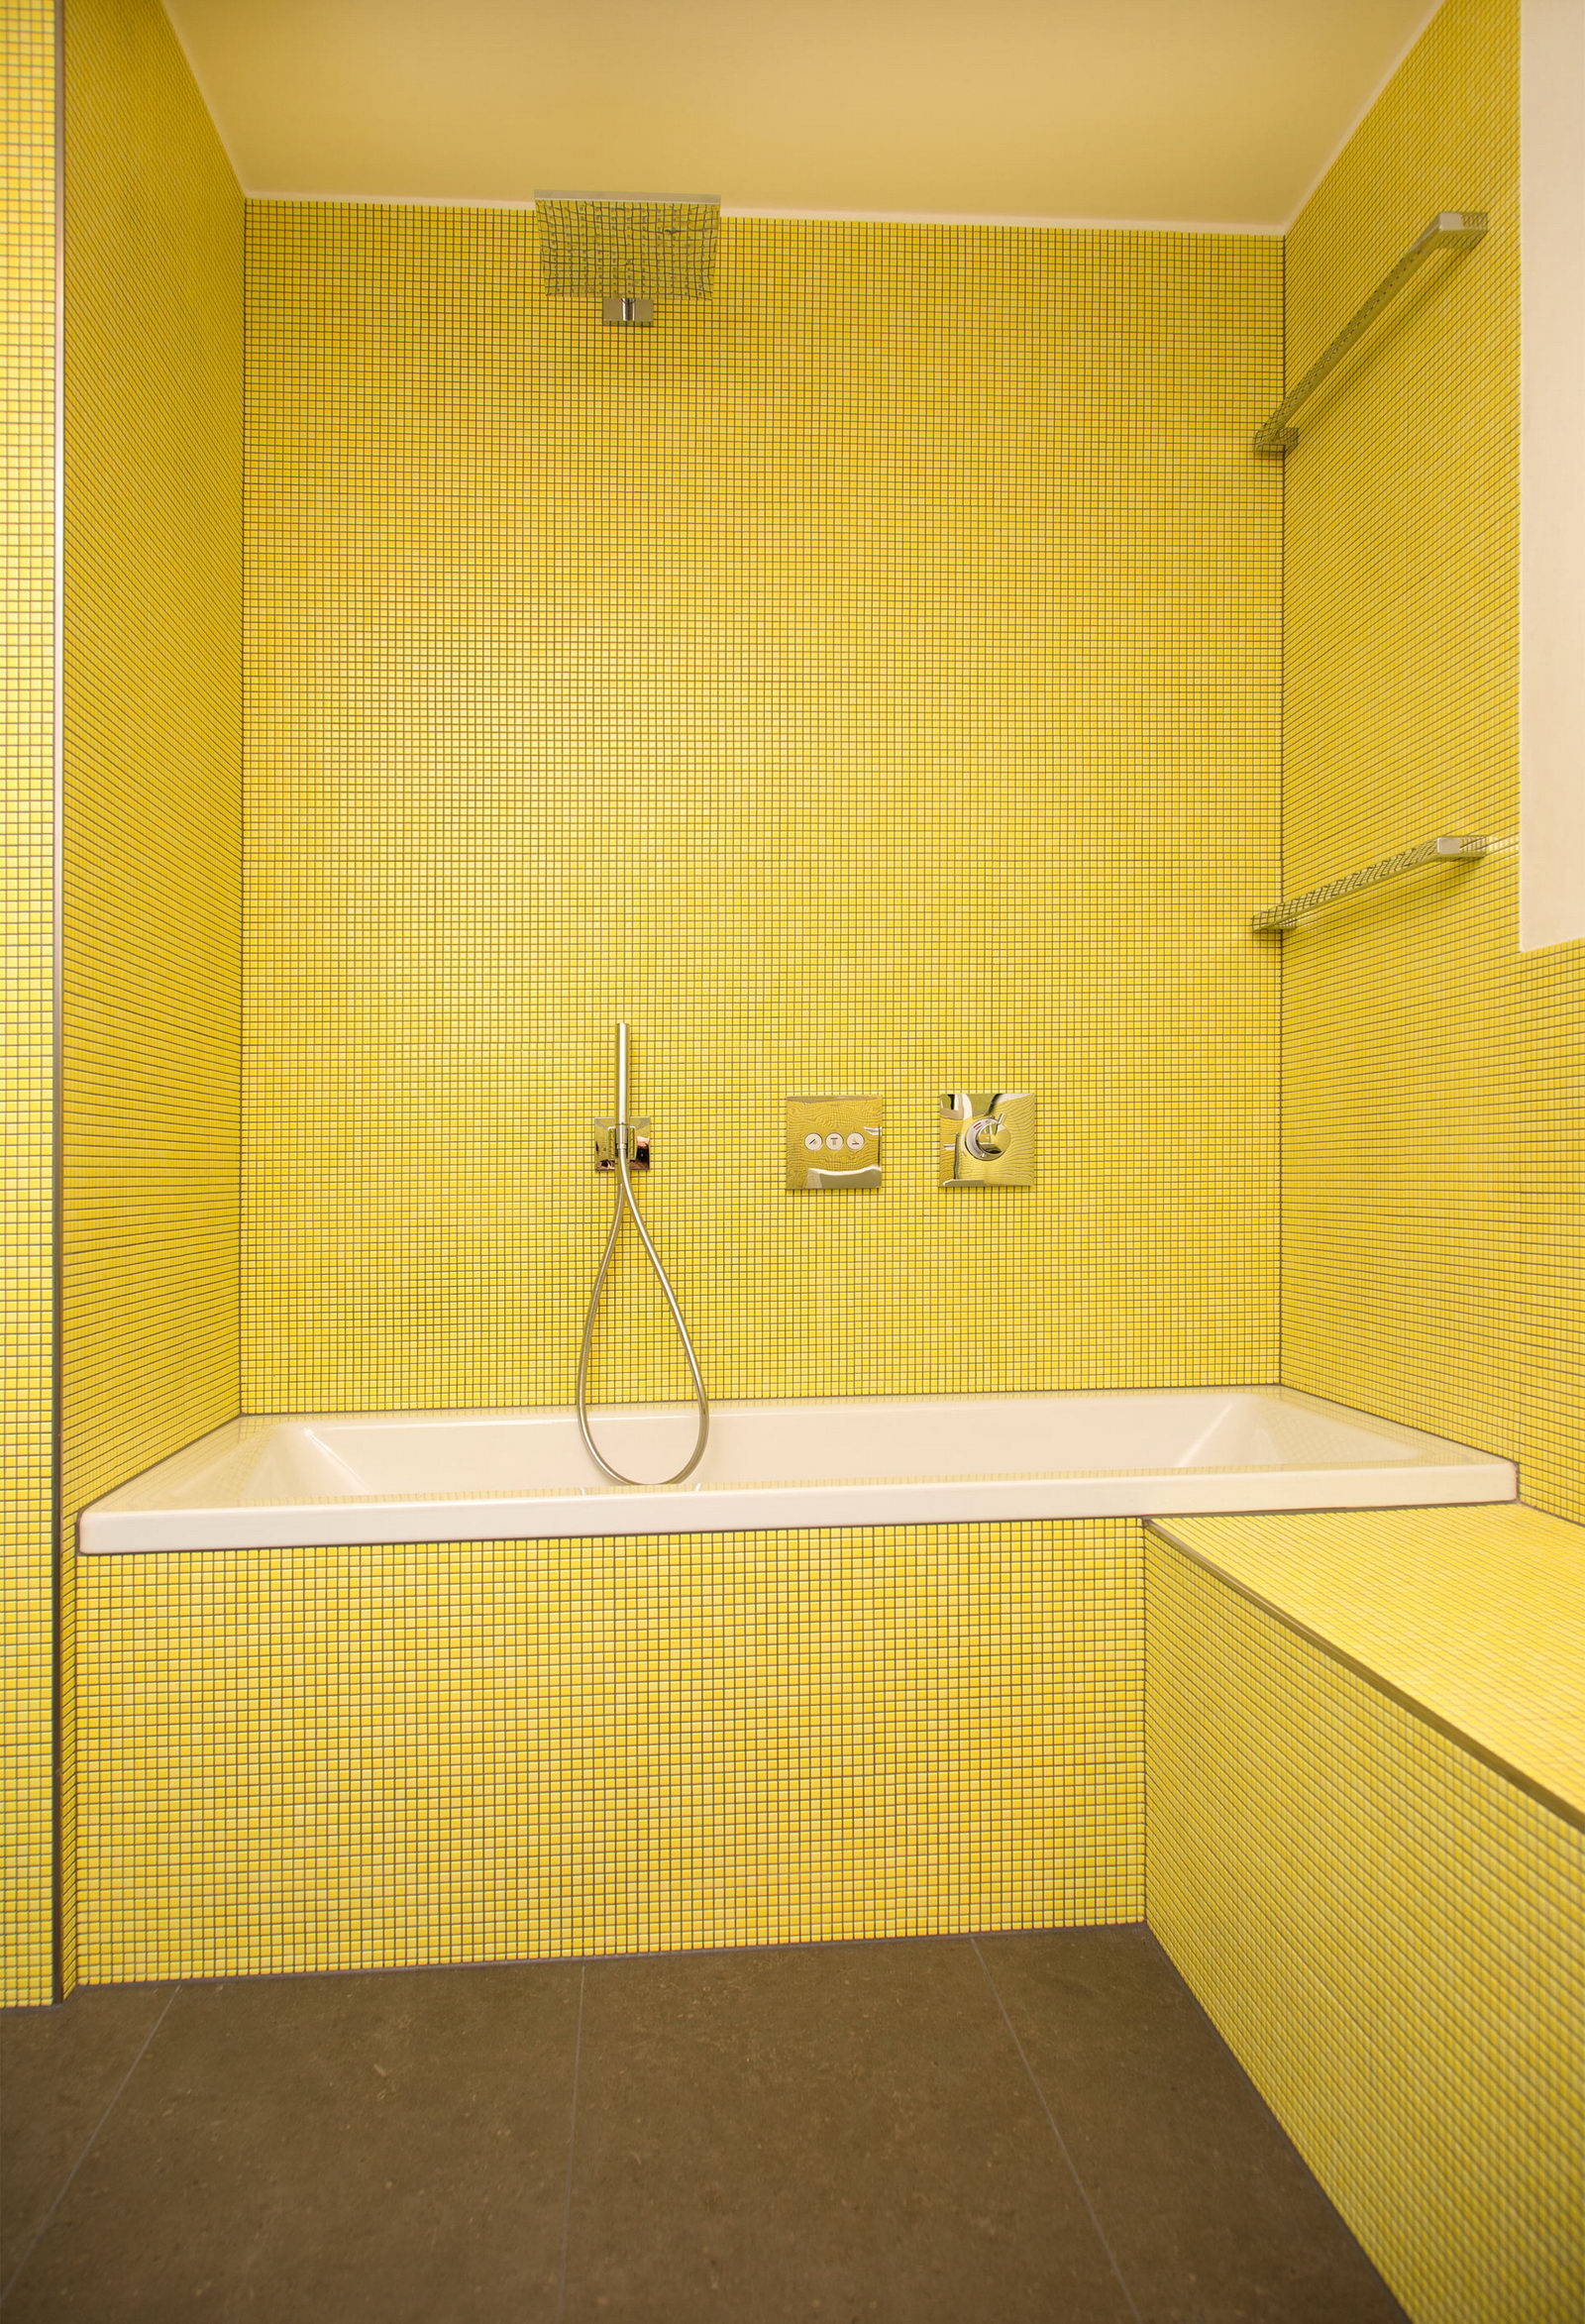 Gestalten mit Farbe - Die Badewanne sticht aus dem gelben Keramikmosaik hervor